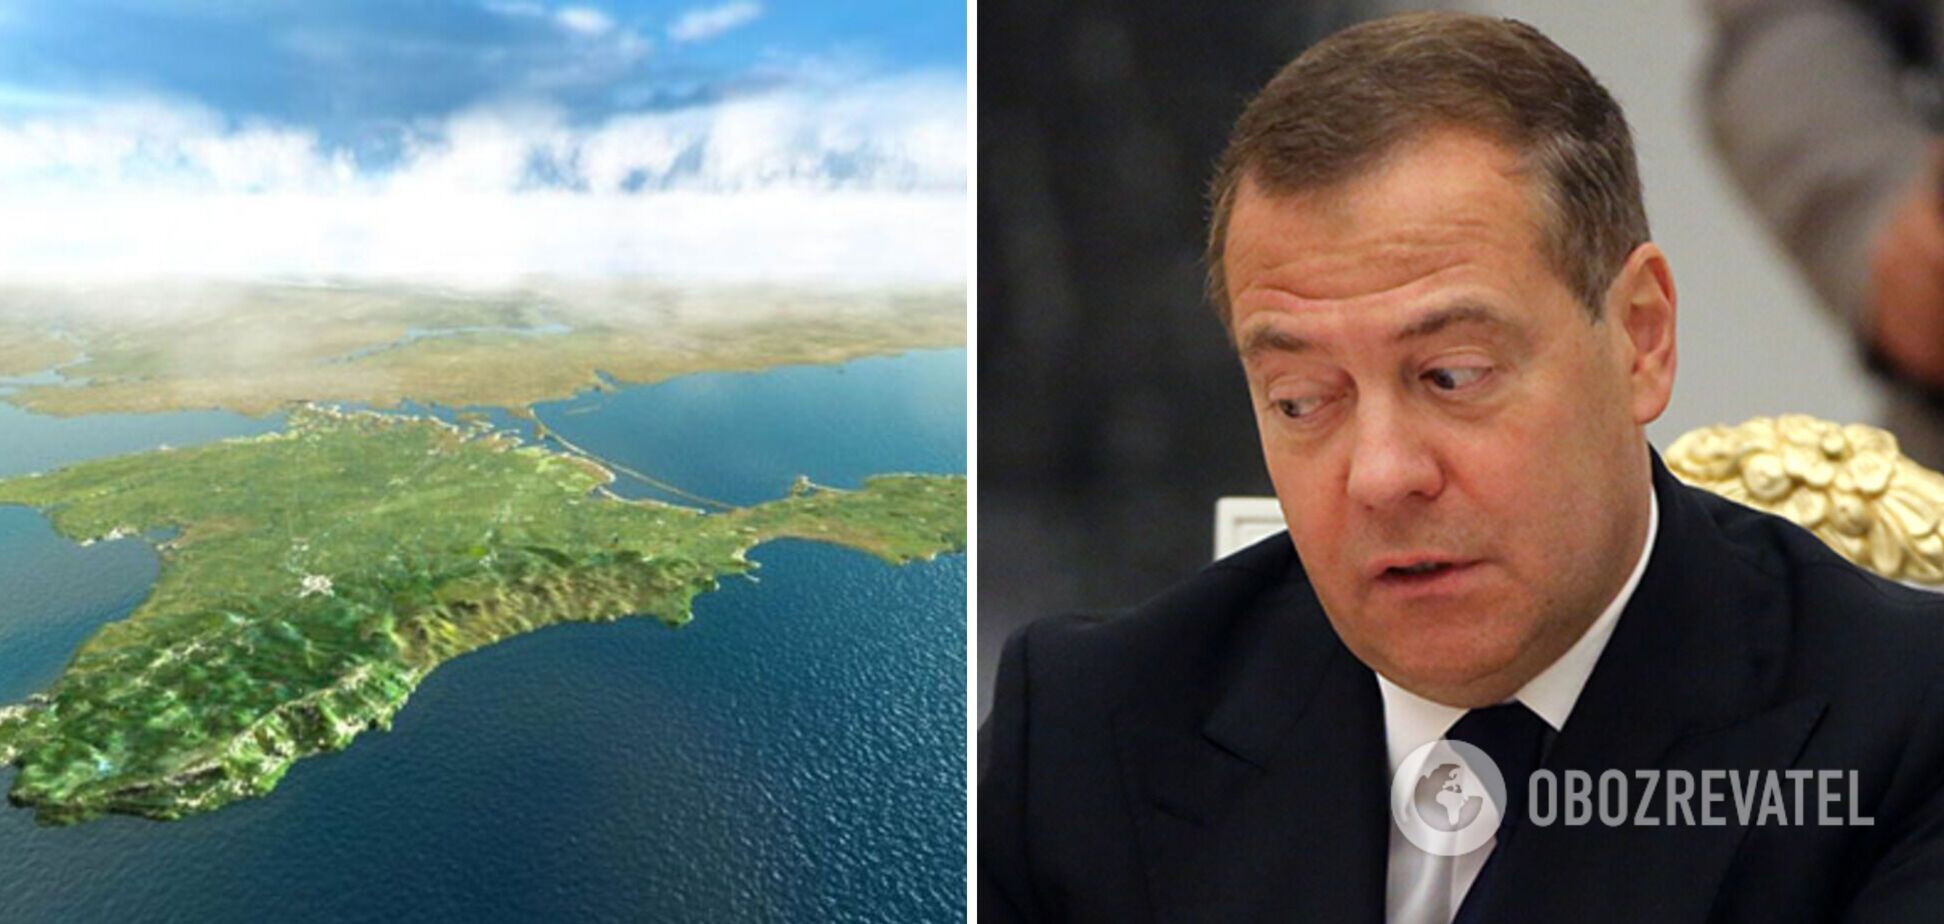 Медведев упал в истерику из-за заявления о Крыме и предложил Чехии отдать Германии Судетскую область